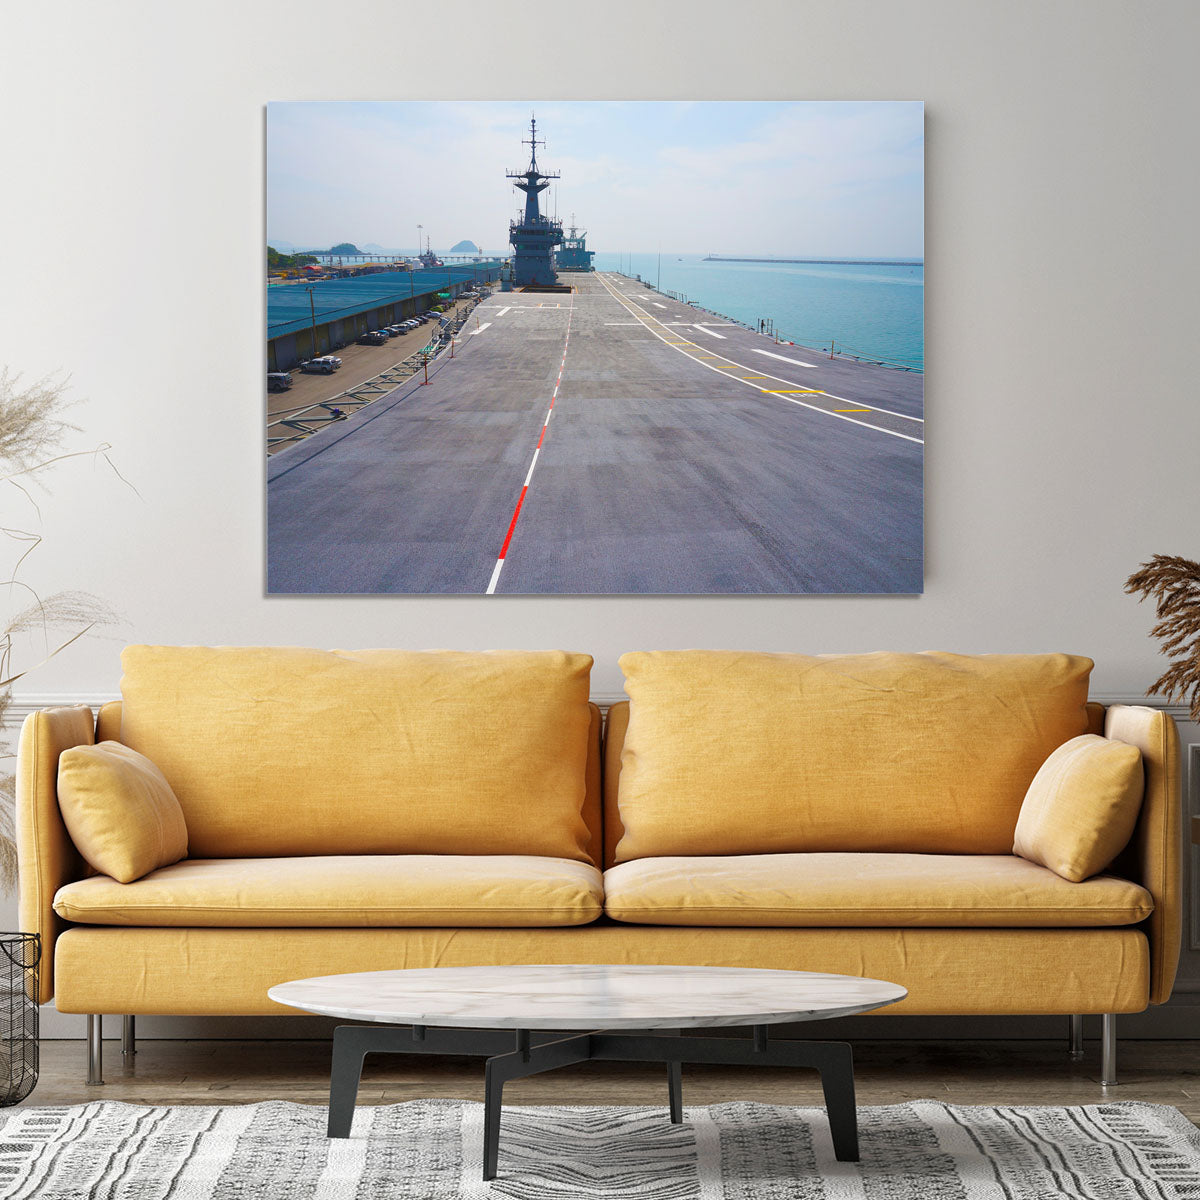 Flight deck of an aircraft carrier Canvas Print or Poster - Canvas Art Rocks - 4